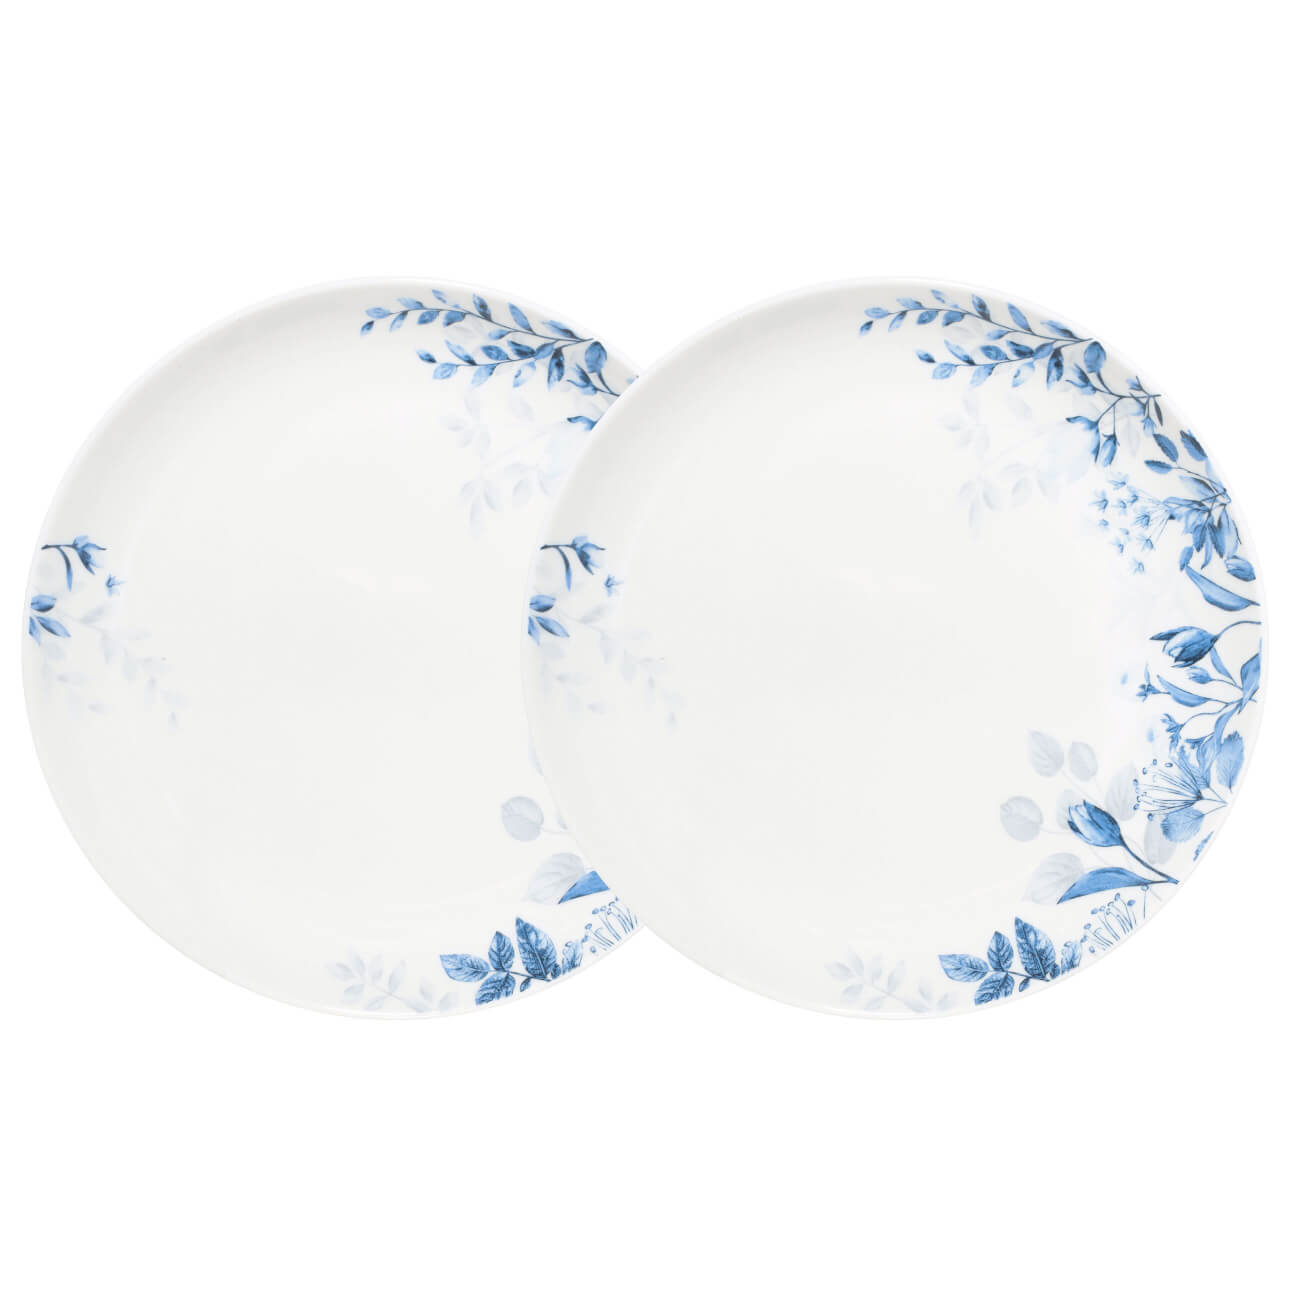 Тарелка закусочная, 21 см, 2 шт, фарфор N, белая, Синие цветы, Royal flower тарелка для сортировки с пинцетом